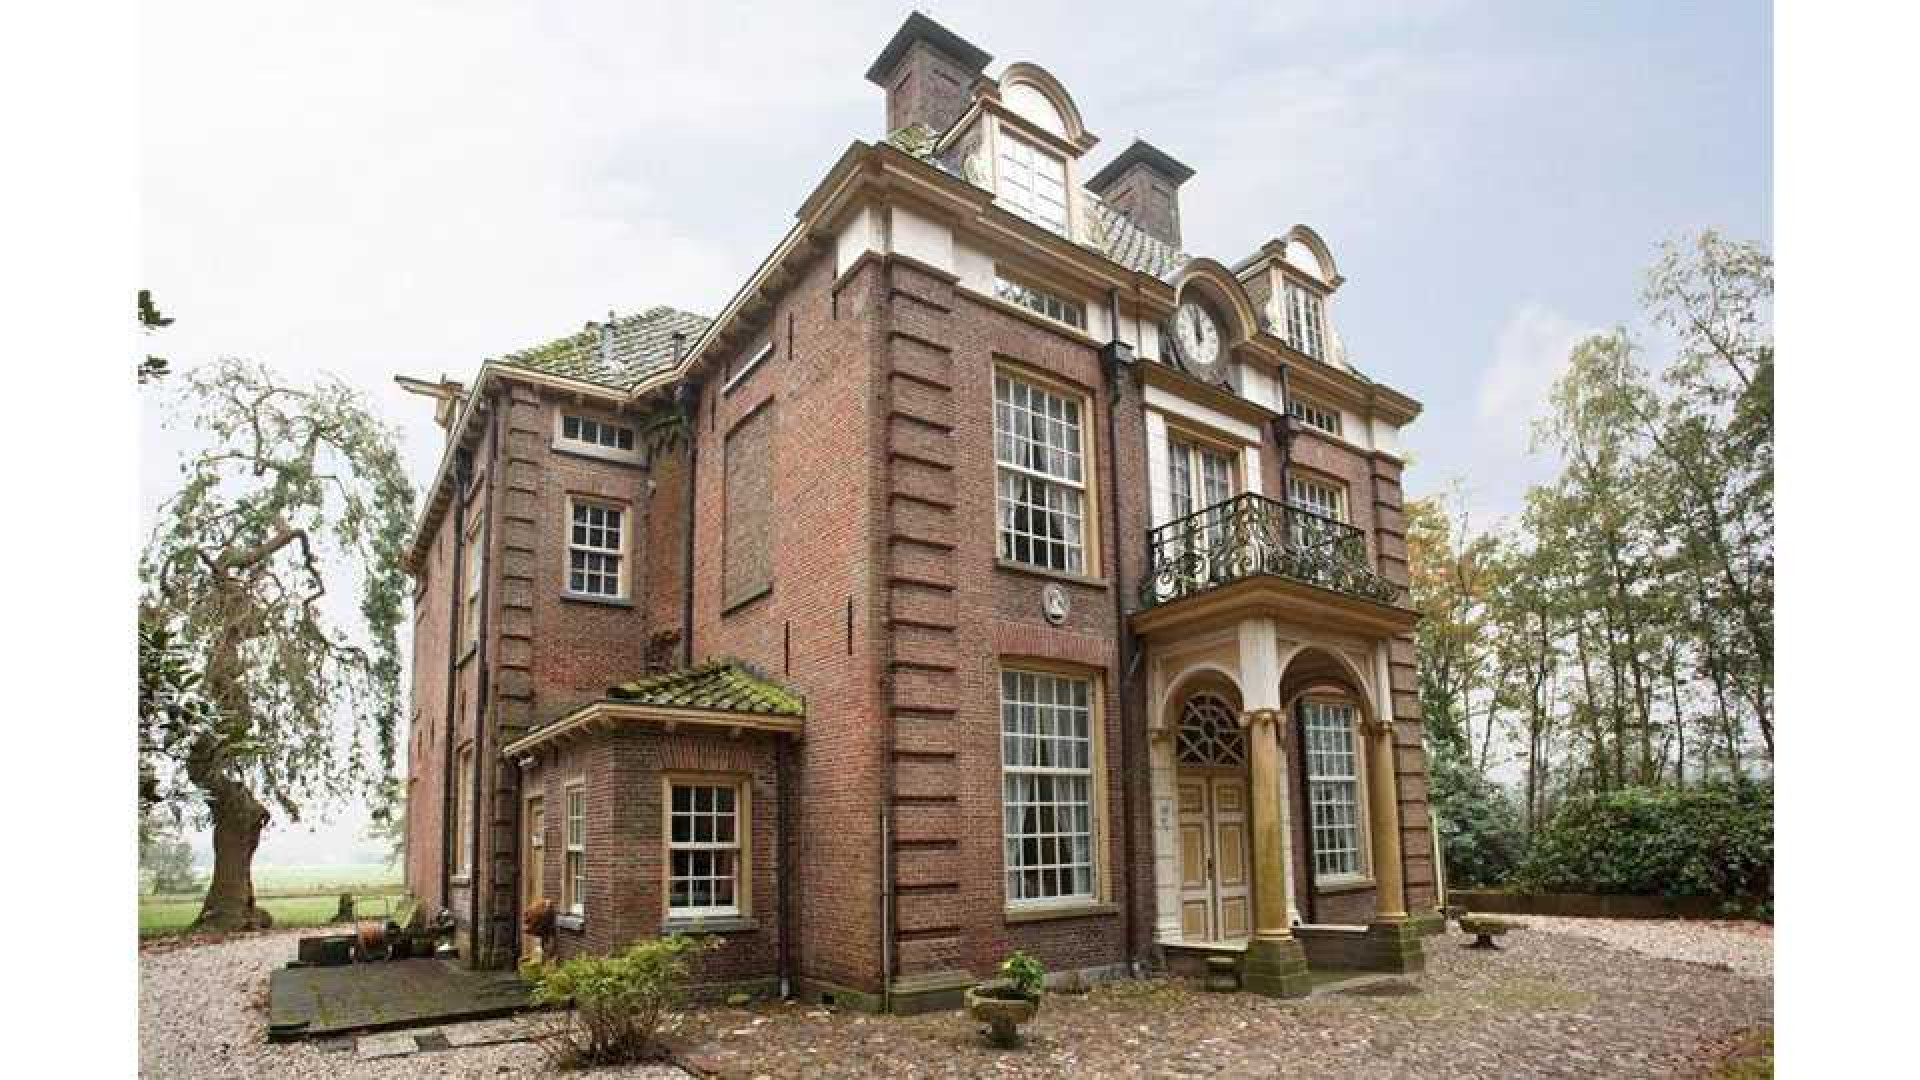 Oud PvdA topman Marcel van Dam verruilt riant landhuis voor eeuwenoud kasteel. Zie foto's 4